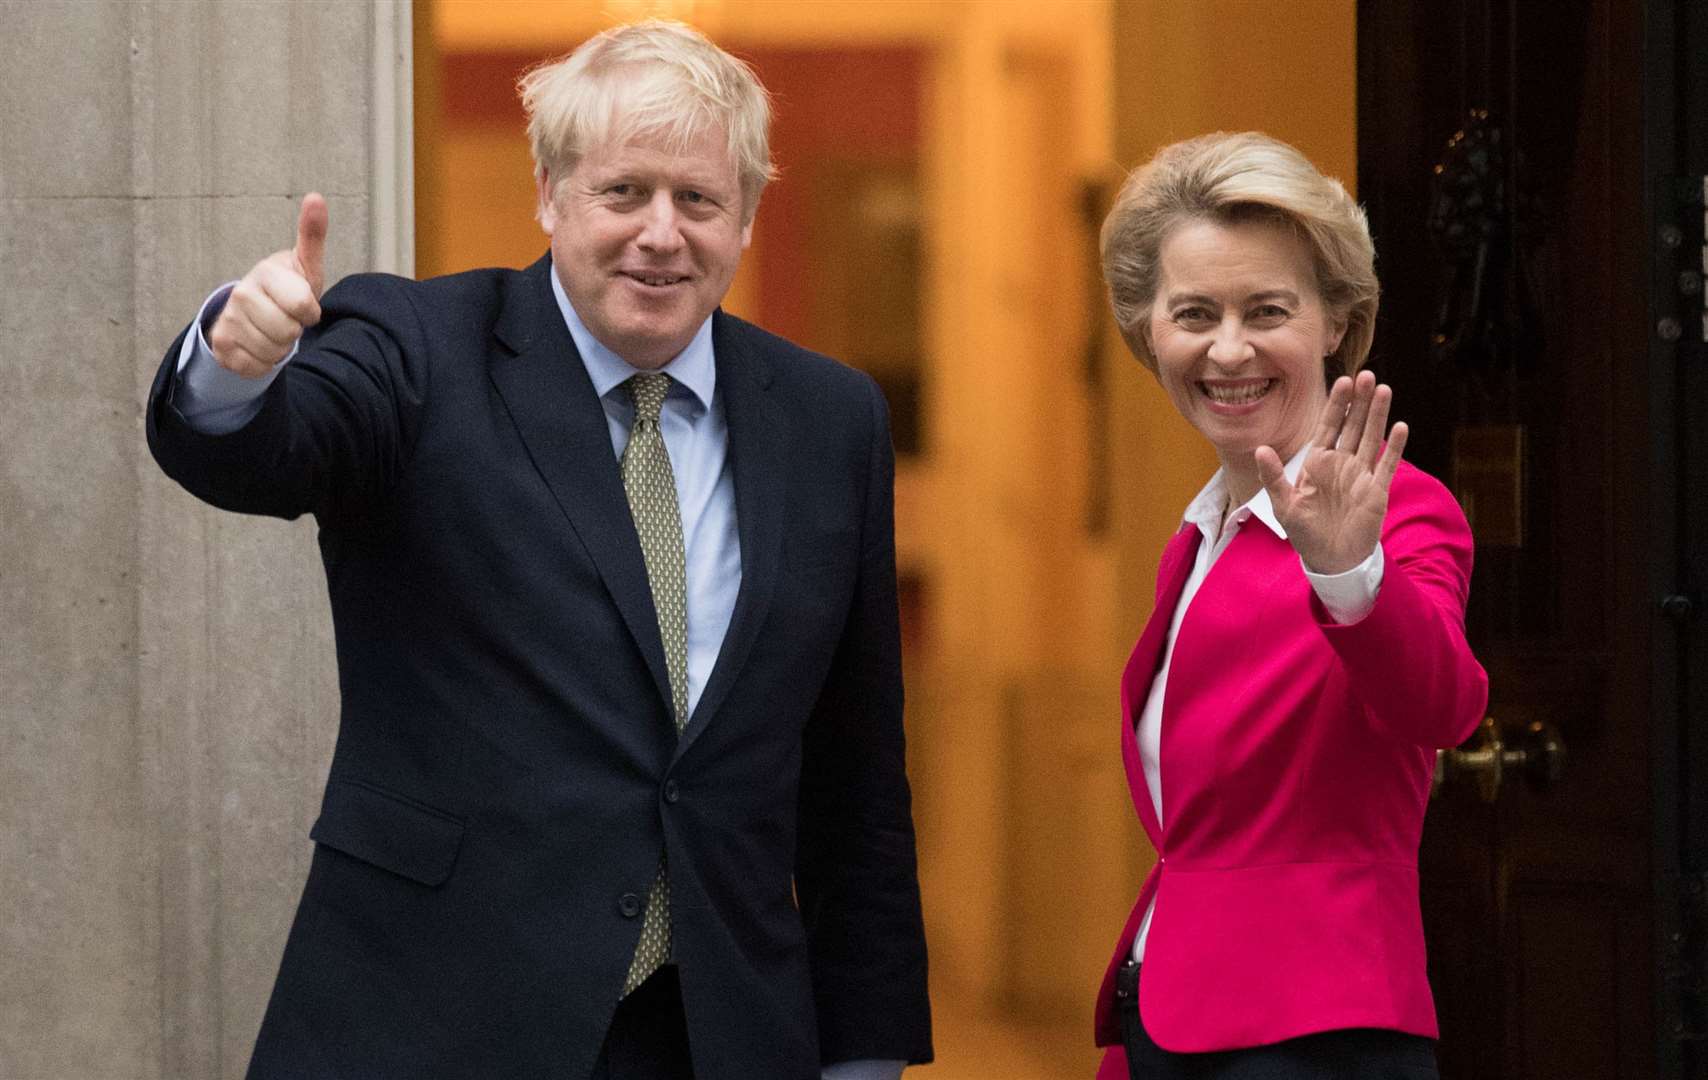 Boris Johnson spoke to Ursula von der Leyen ahead of the summit in Brussels (Stefan Rousseau/PA)